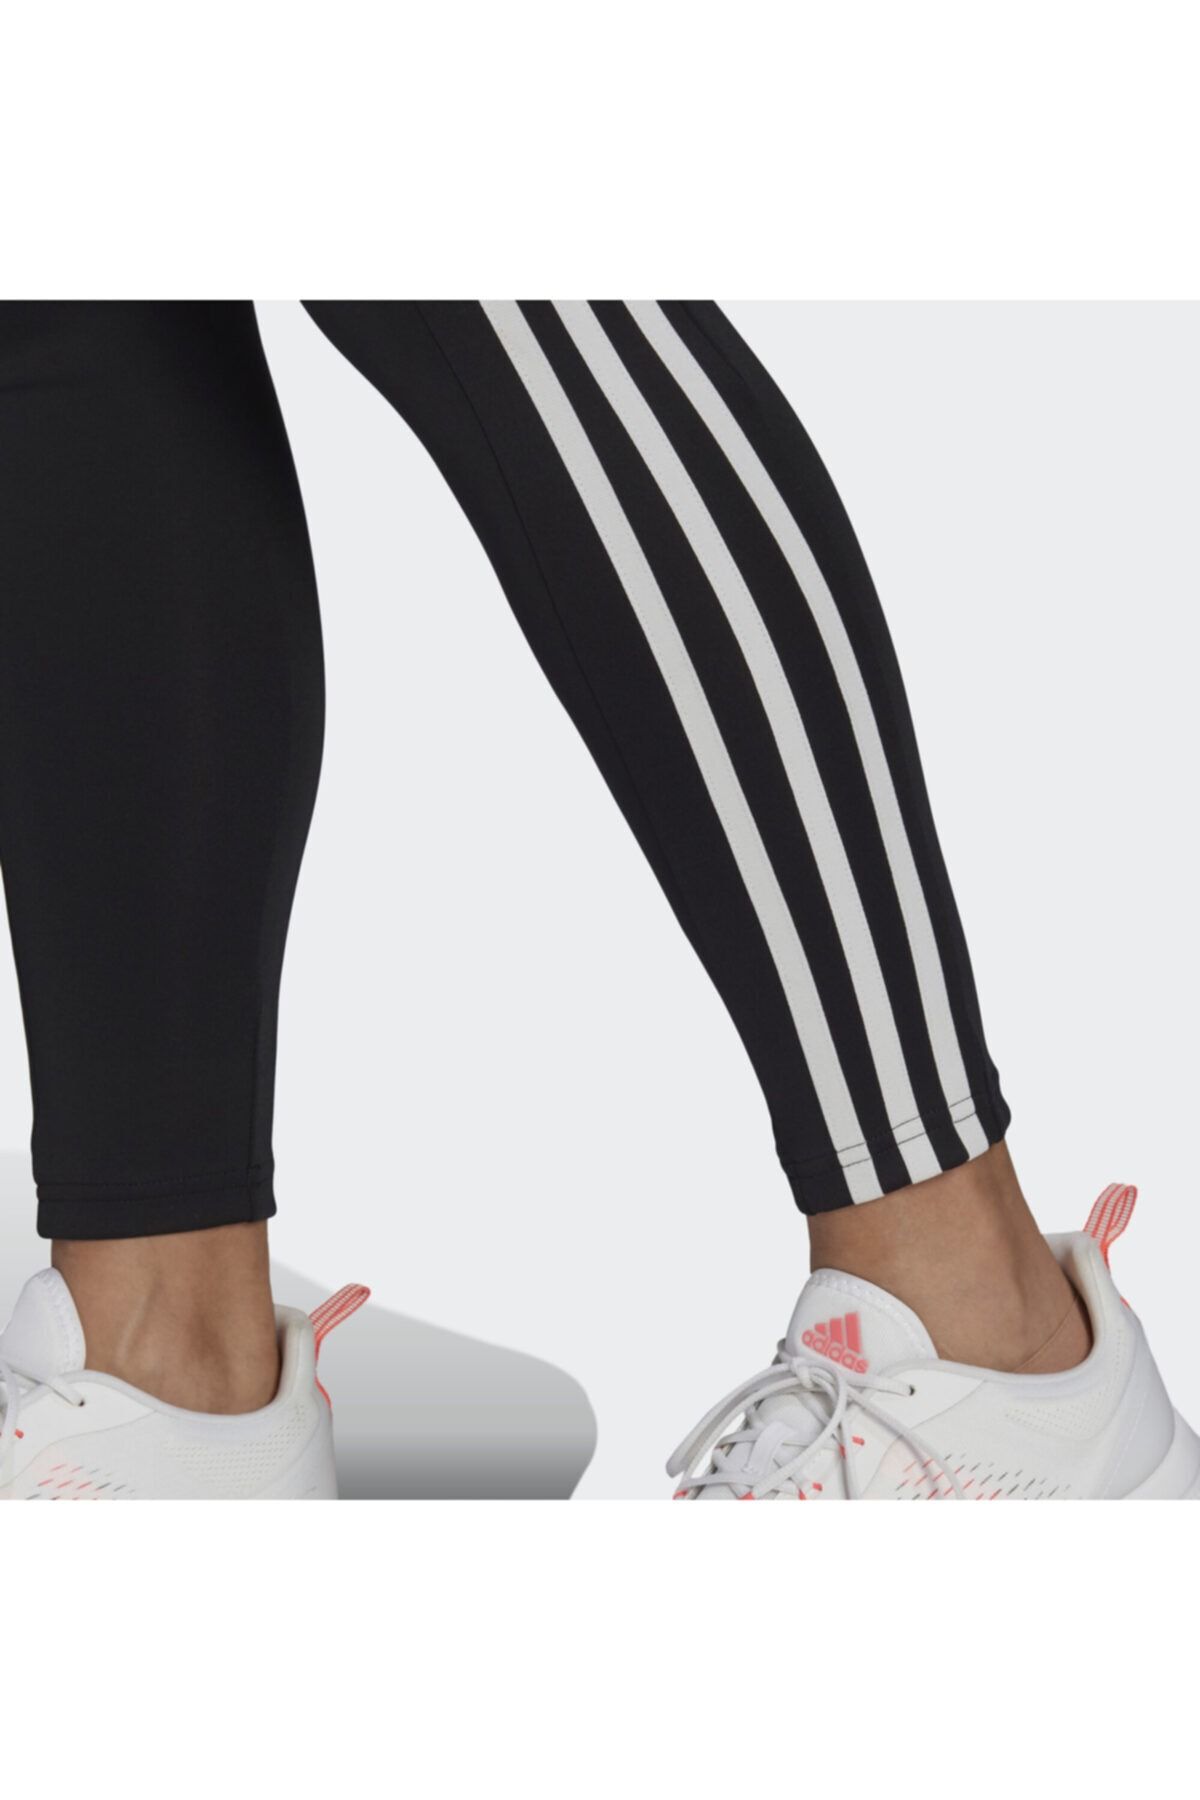 Adidas High Rise 3-Stripes 7/8 Tight GL4040 Leggings Black / White L Large